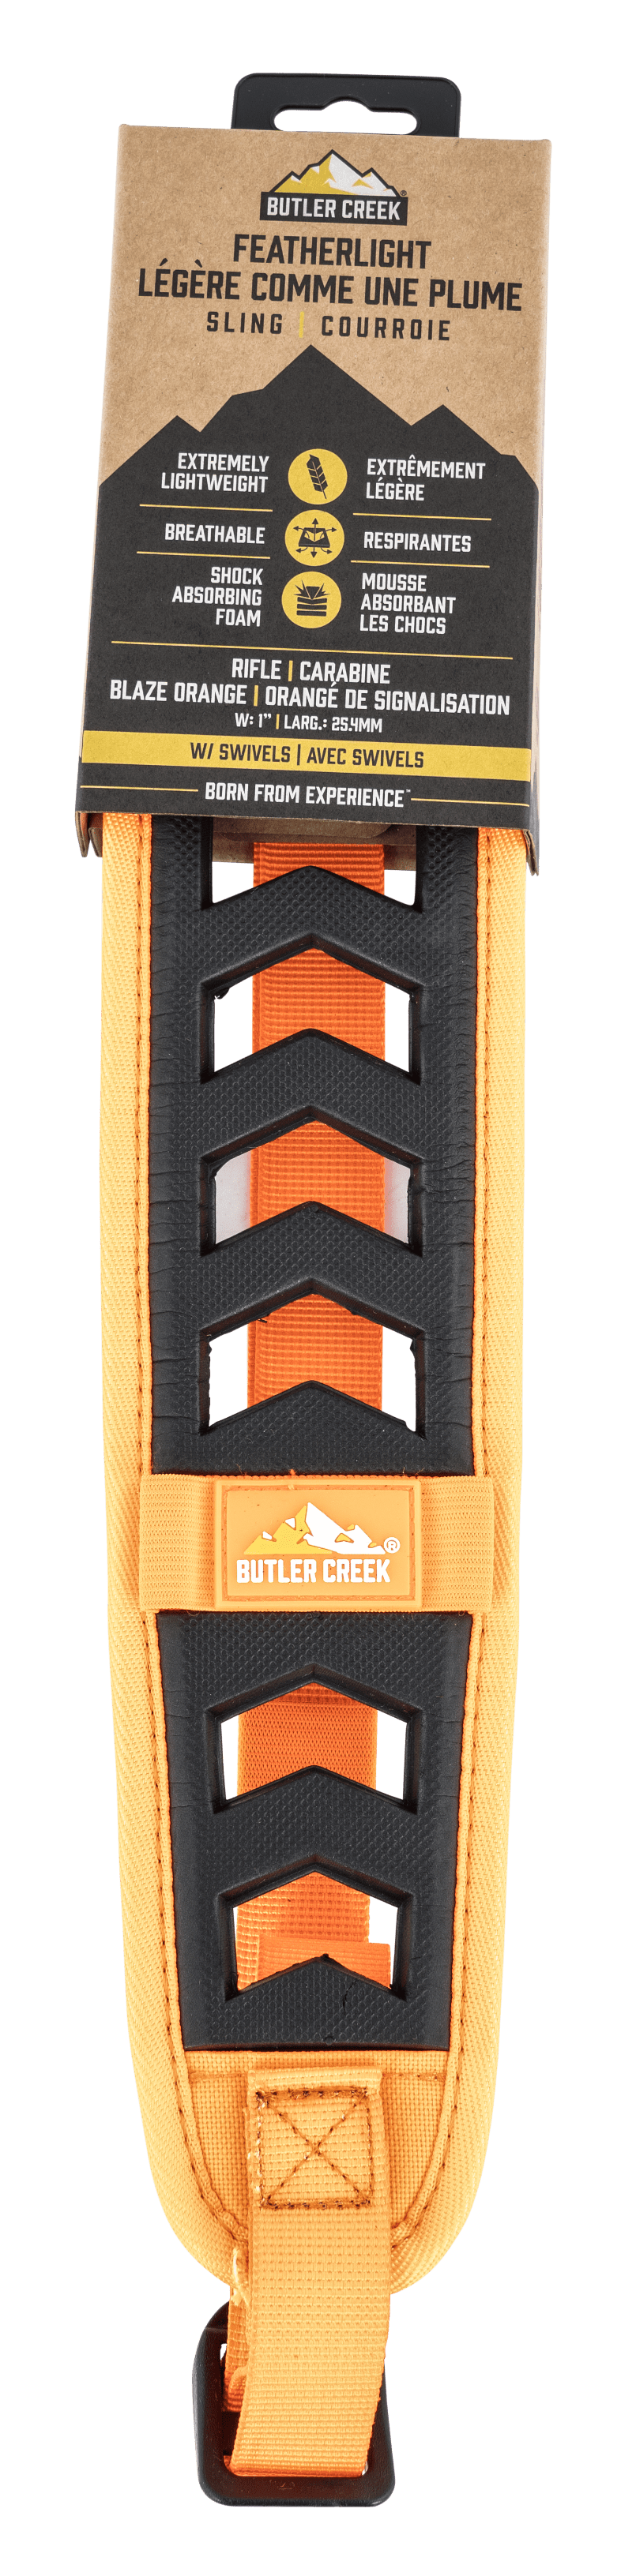 Butler Creek Butler Creek Featherlight Sling Blaze Orange W/ Swivels Rifle Shooting Gear and Acc